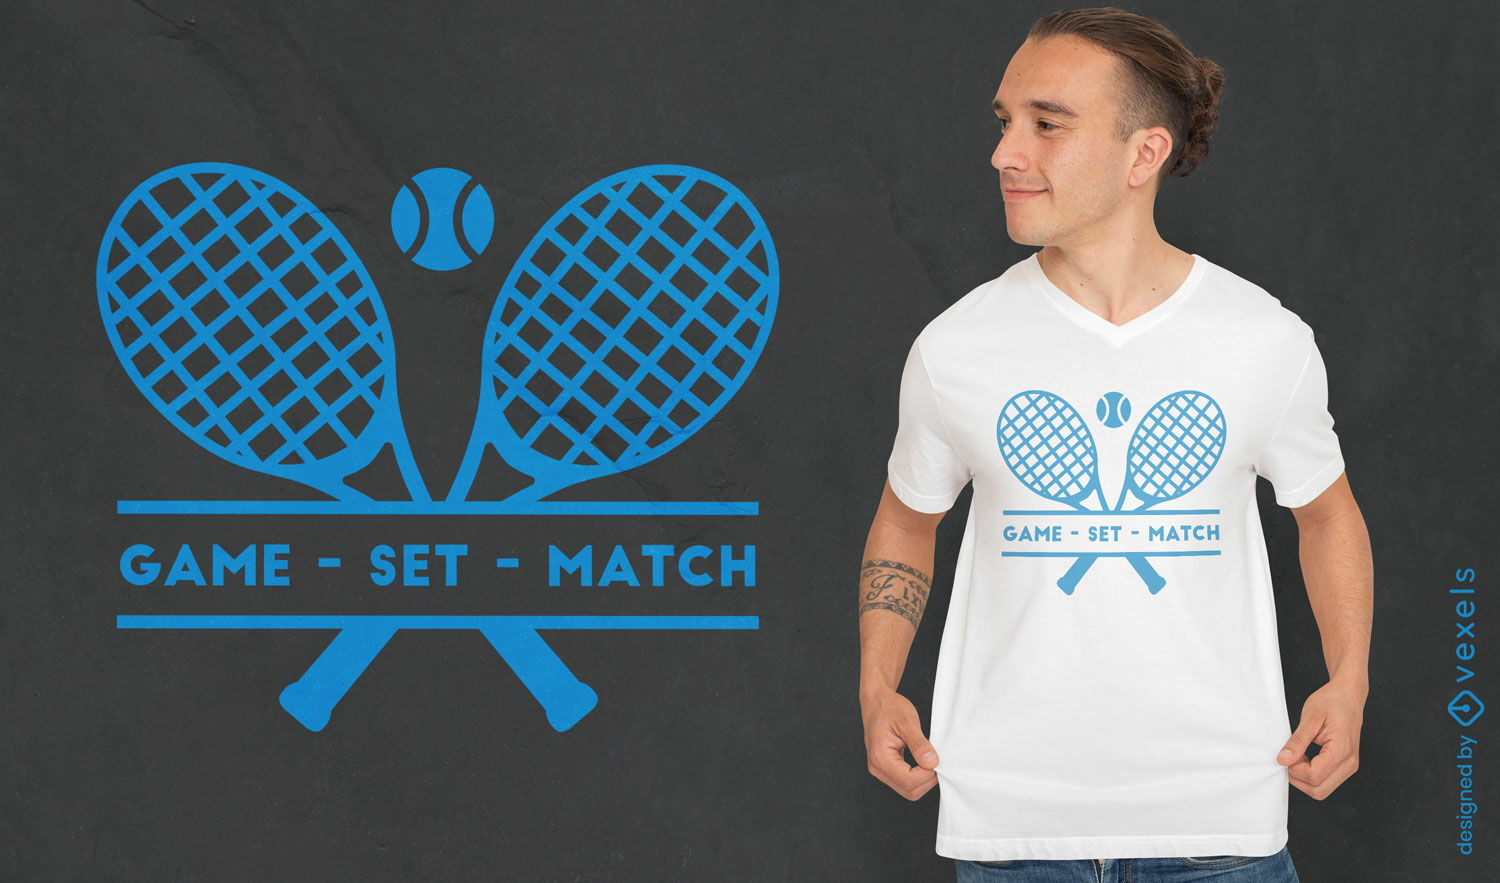 Game set match tennis t-shirt design